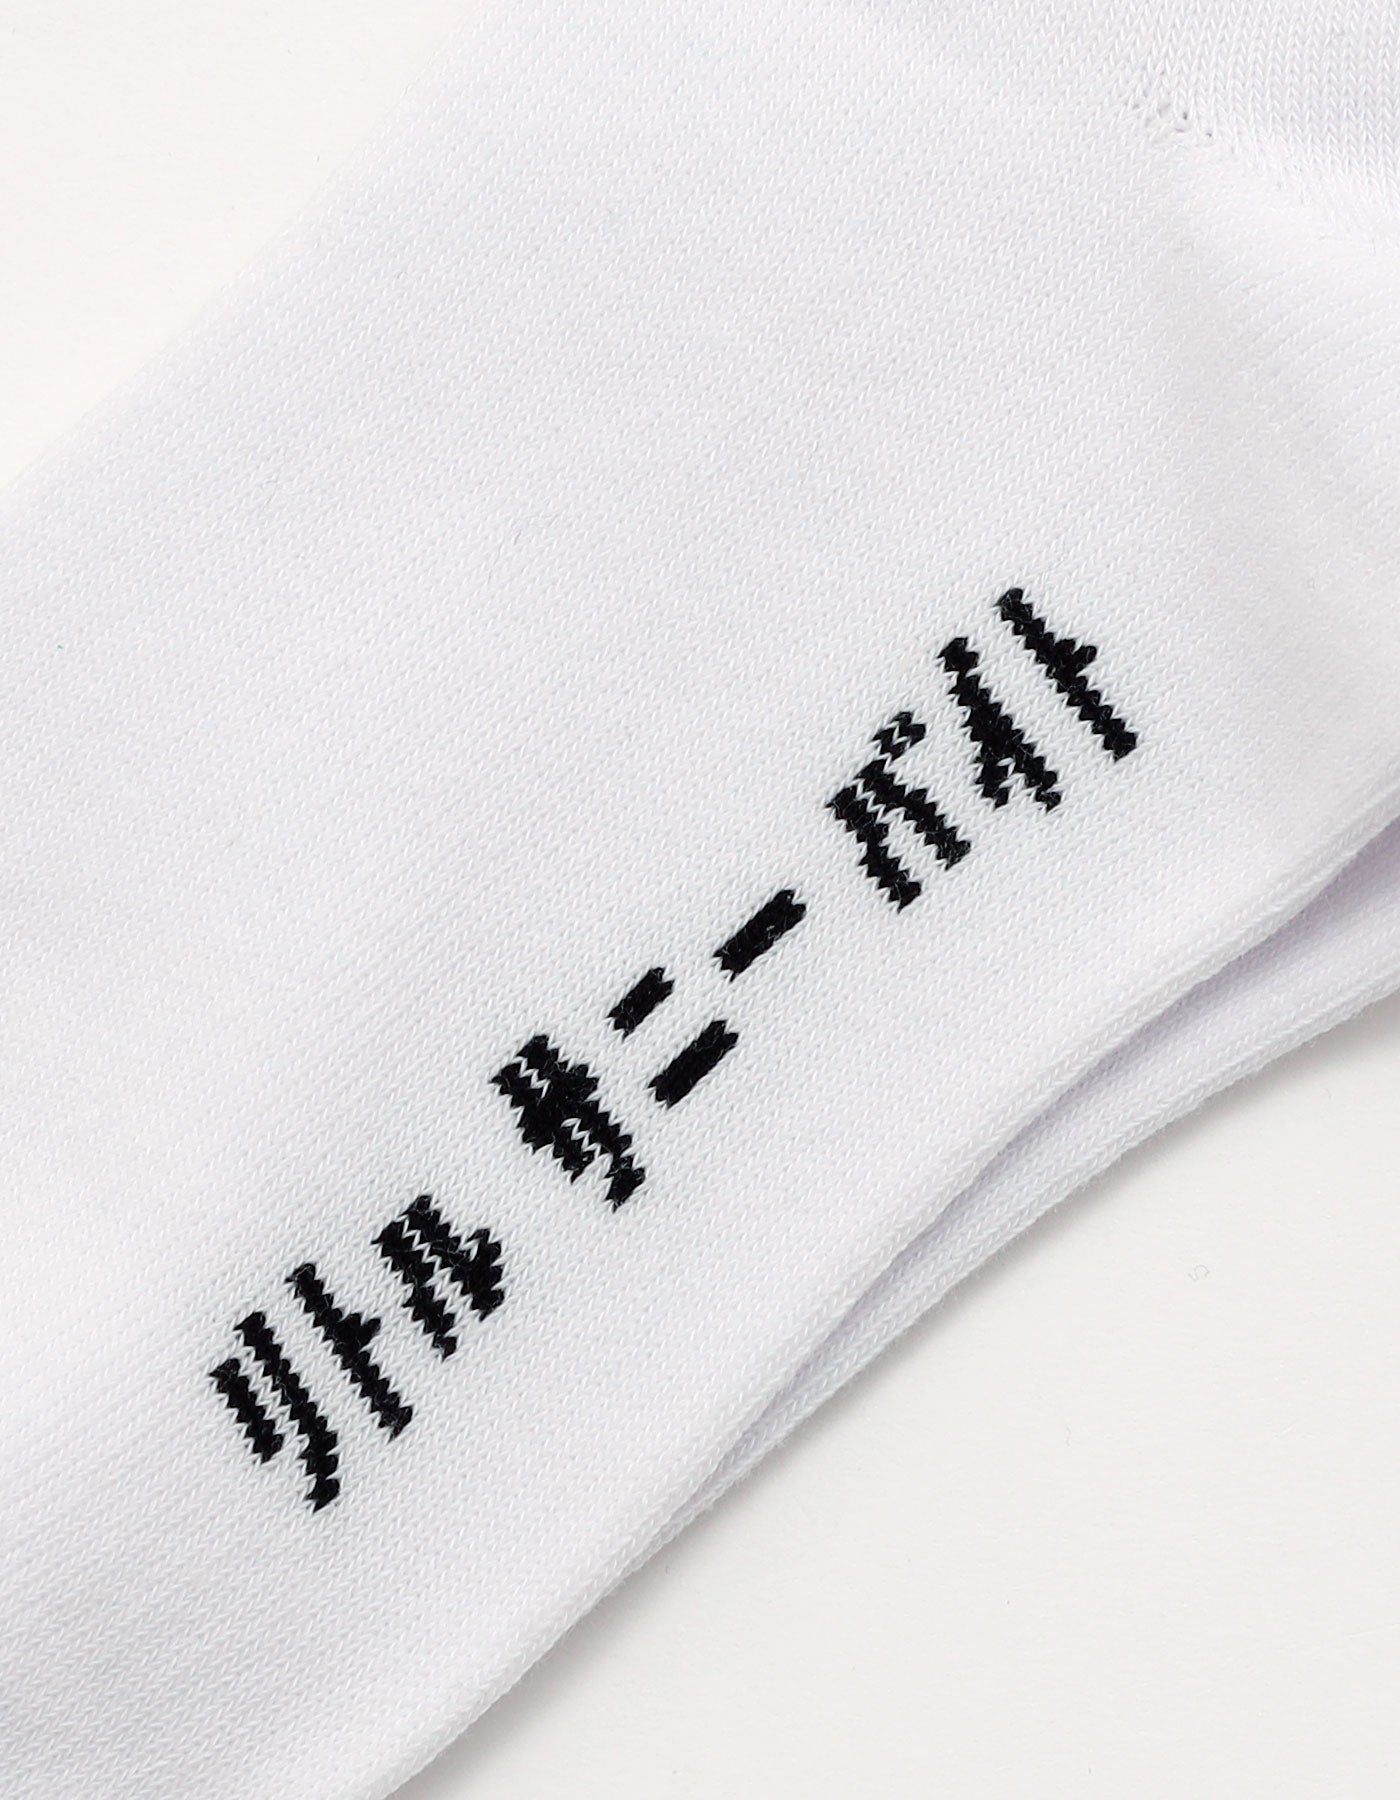 message socks / WHITE